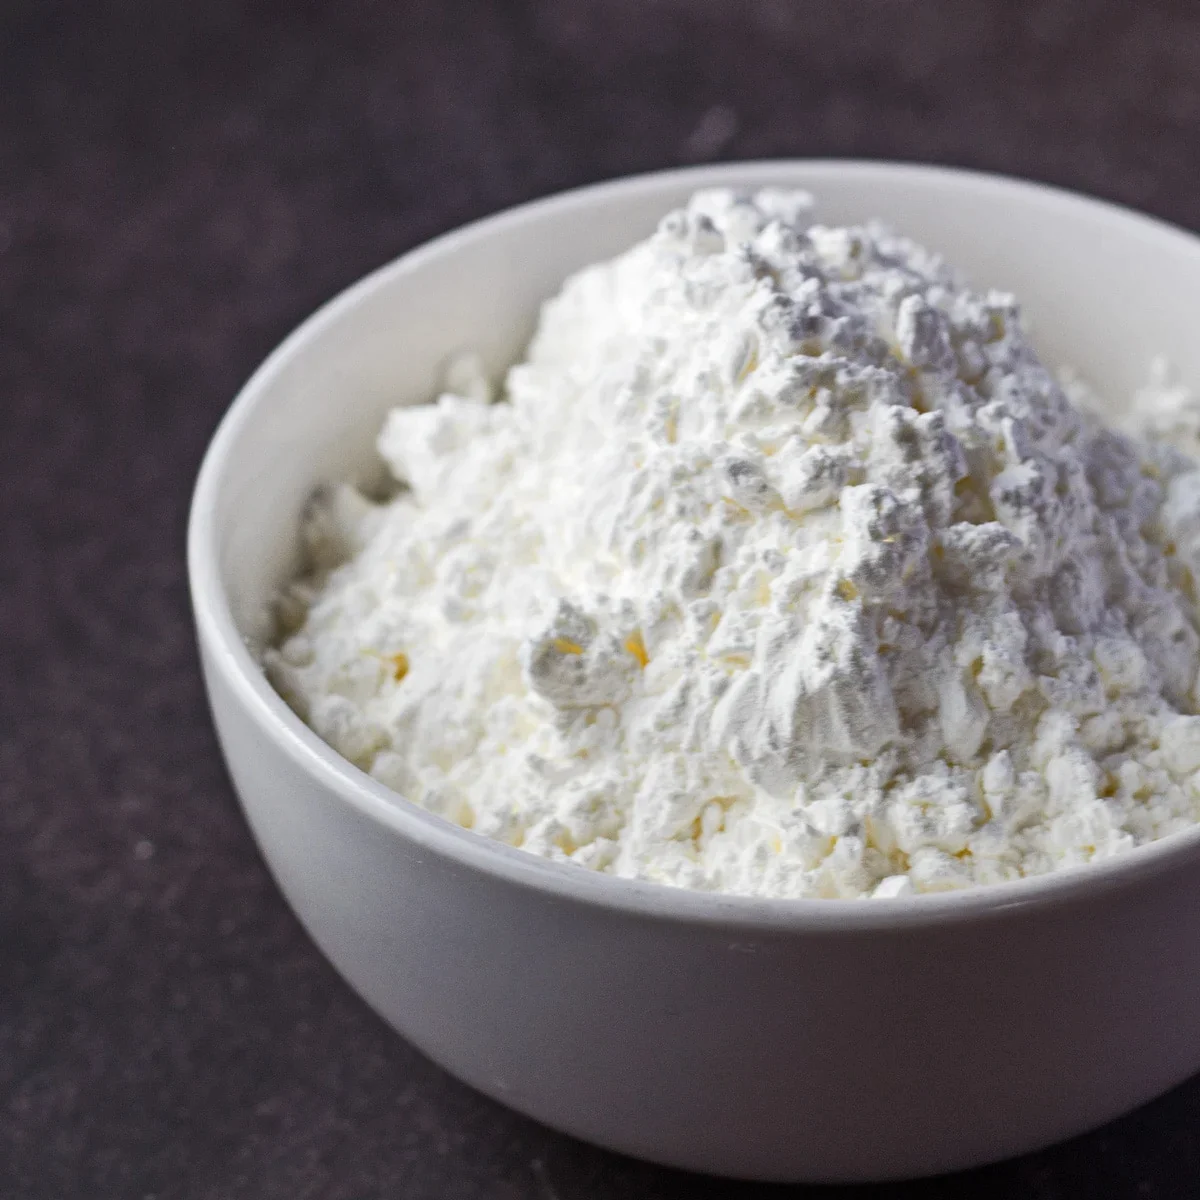 Tapioca Flour